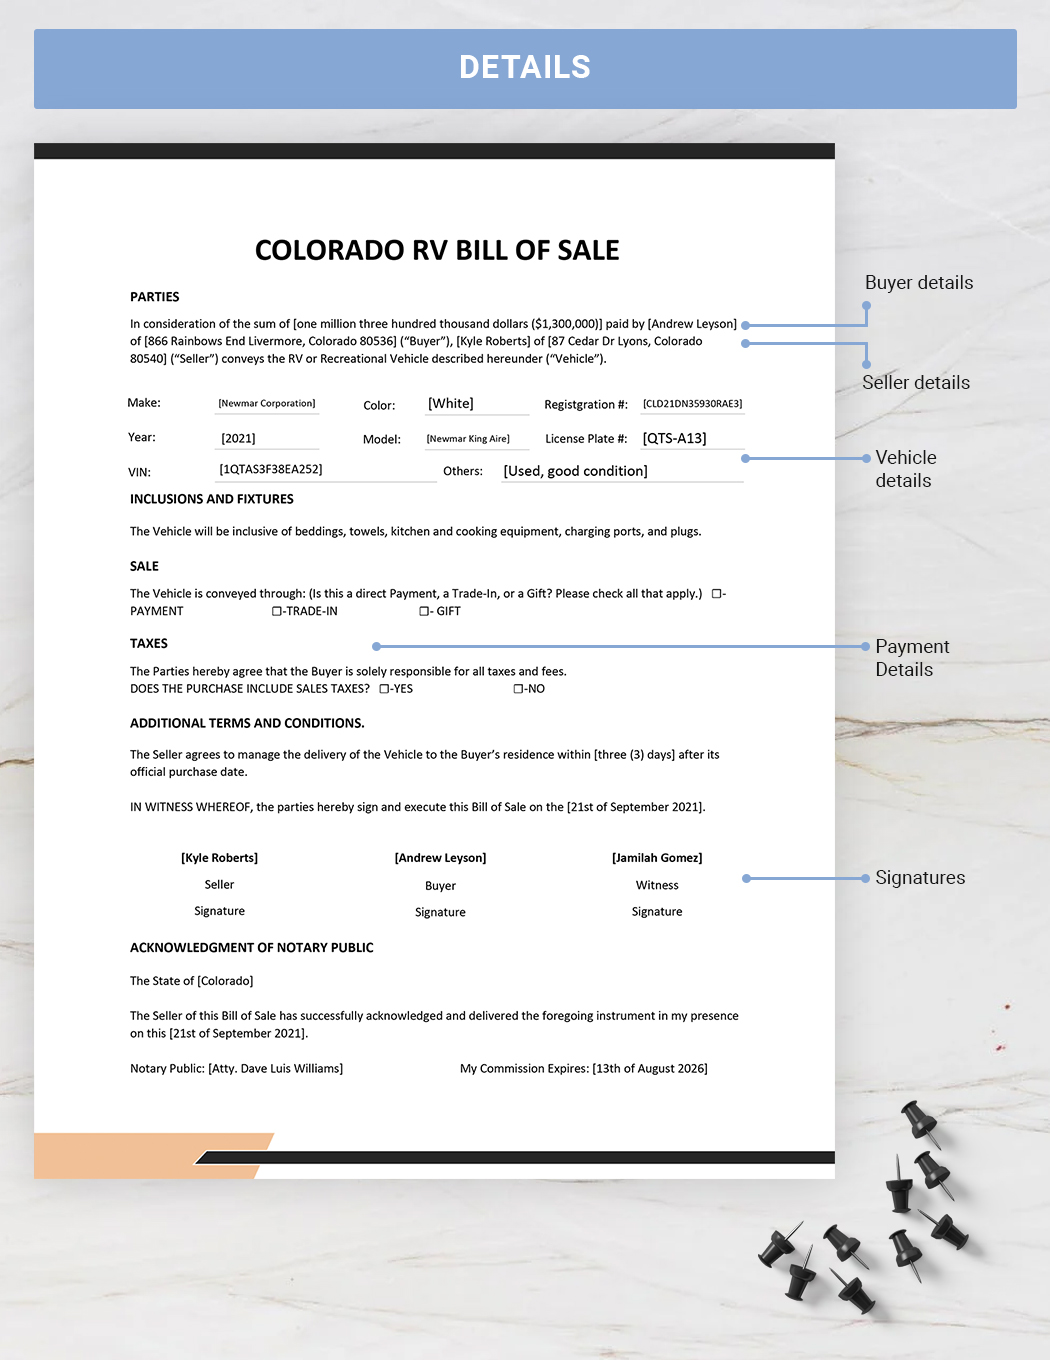 Colorado RV Bill of Sale Template